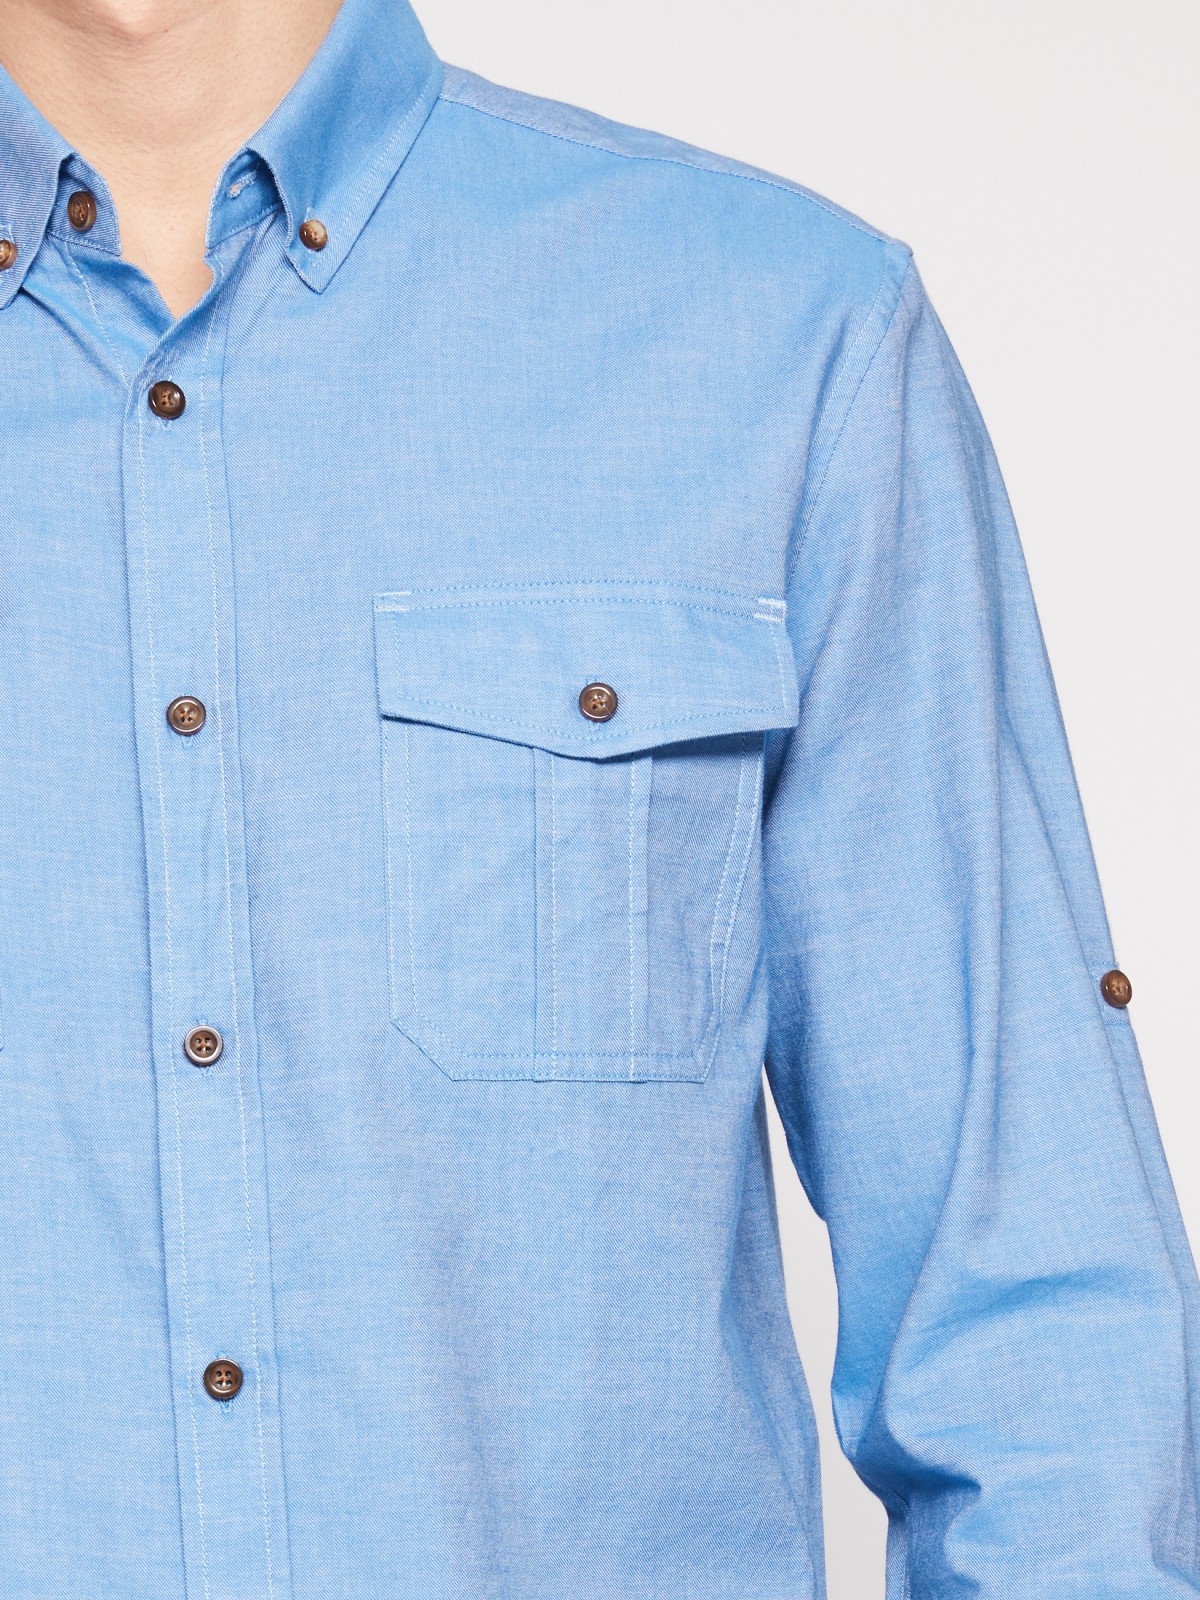 Хлопковая рубашка с длинным рукавом zolla 012122159063, цвет голубой, размер M - фото 5